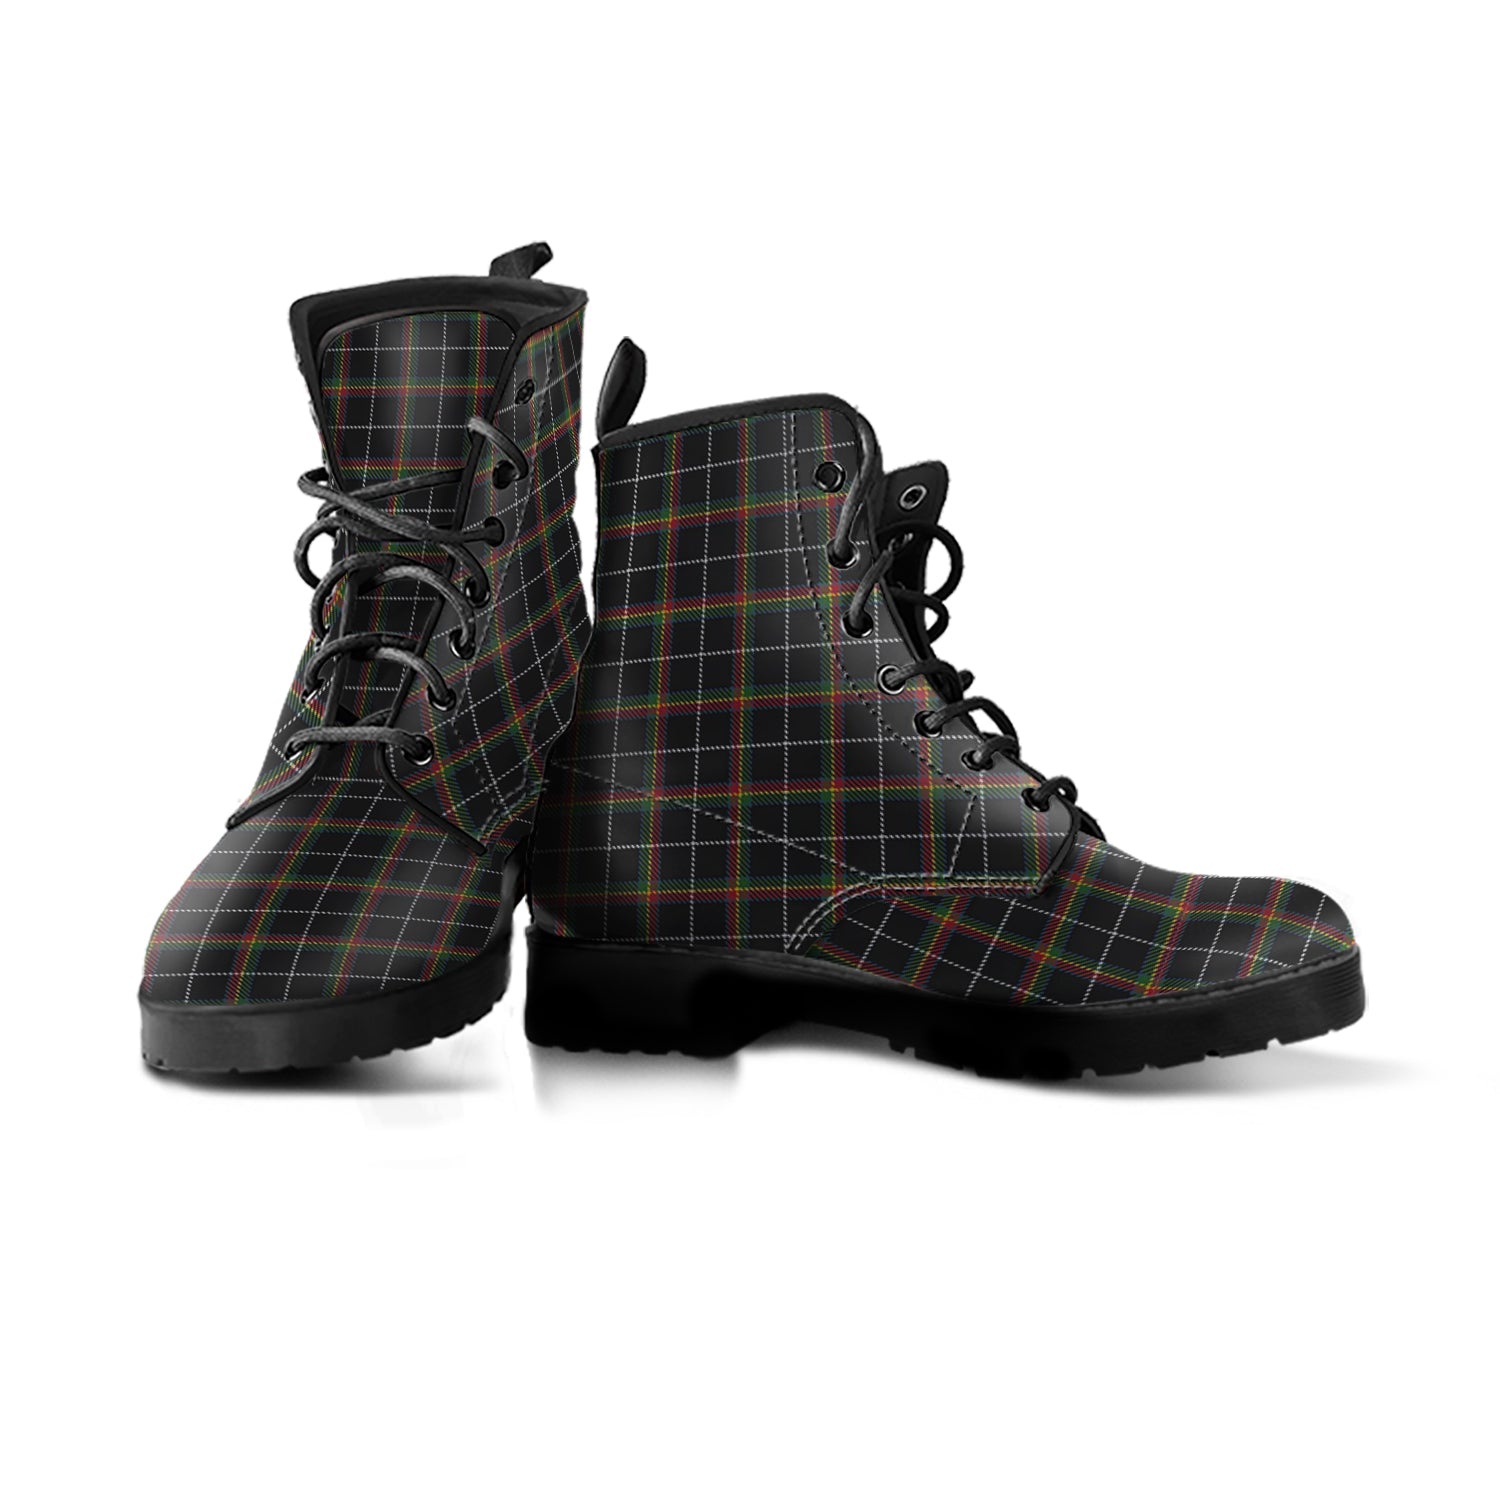 stott-tartan-leather-boots